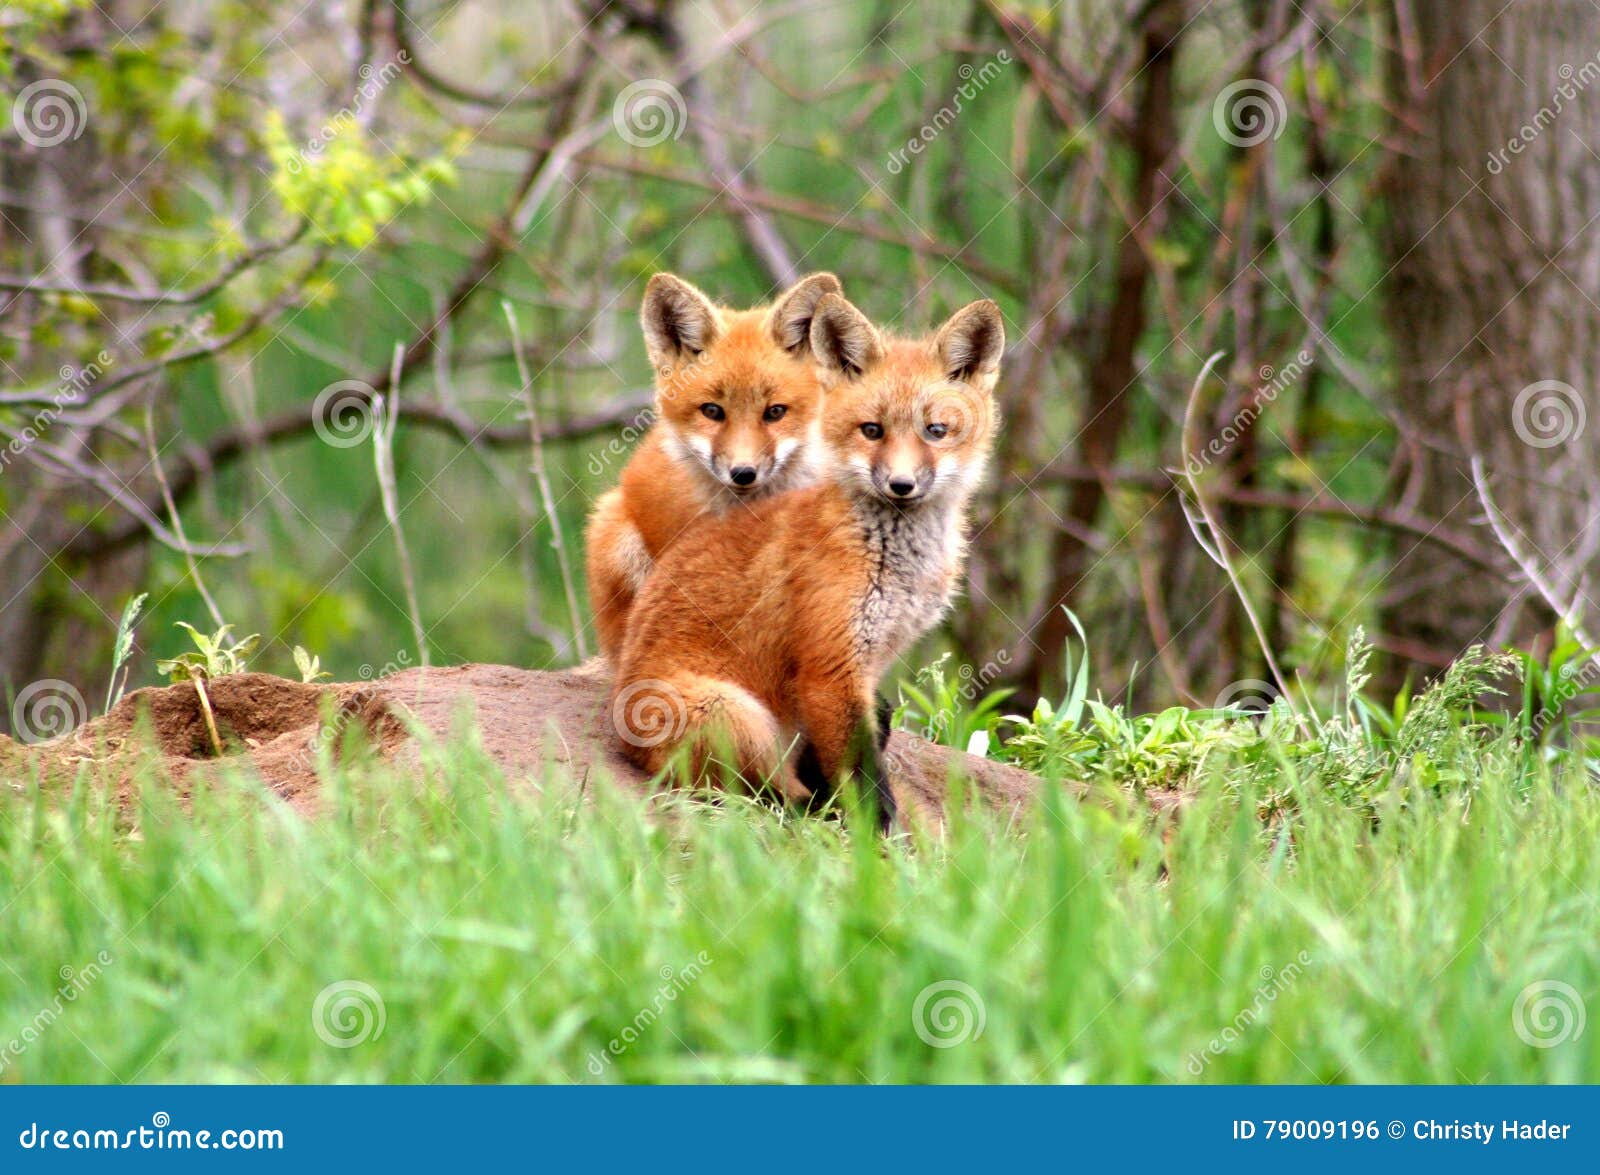 red fox siblings